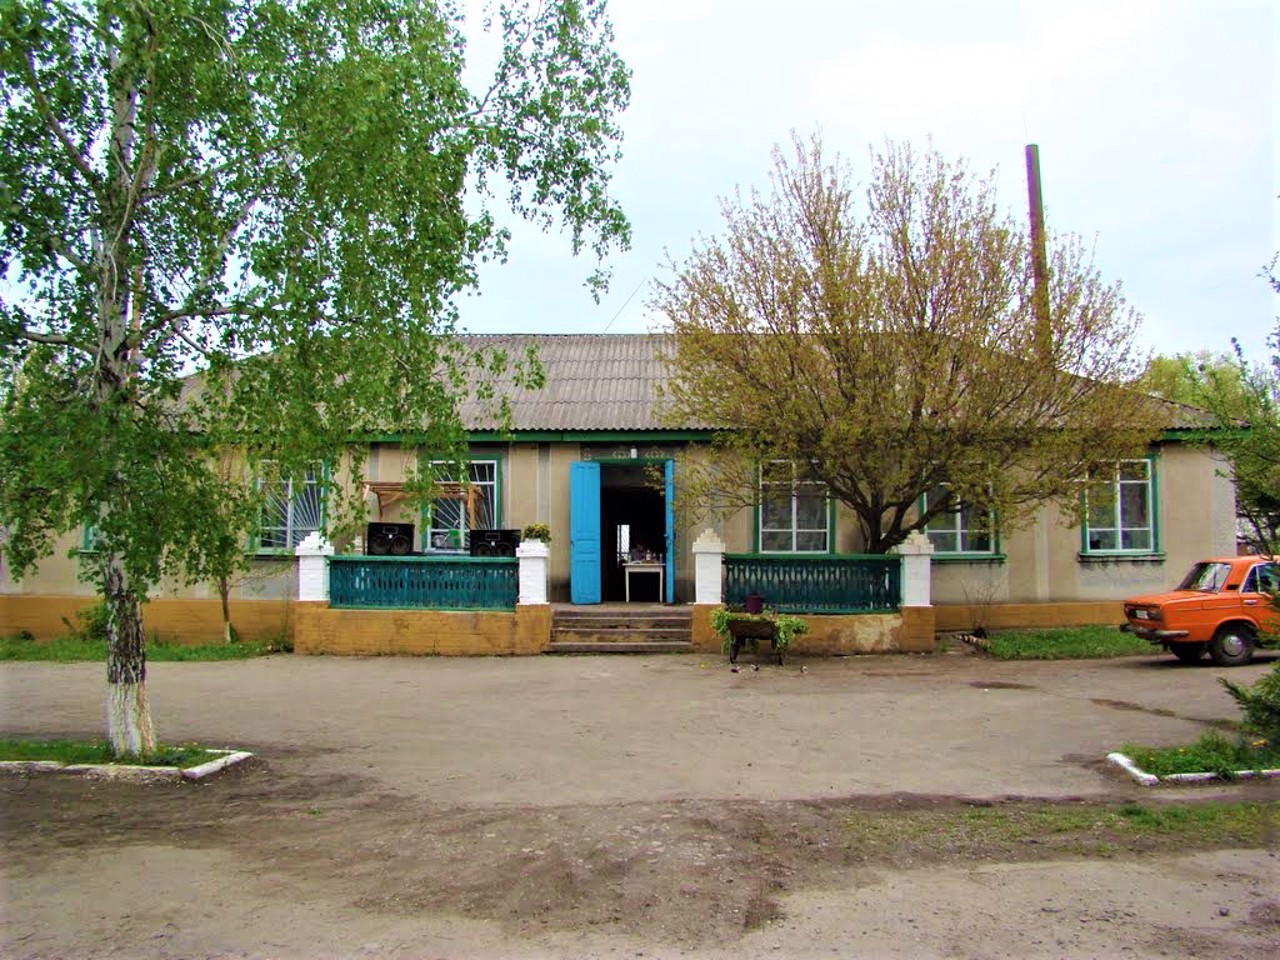 Verbivka village, Cherkasy district